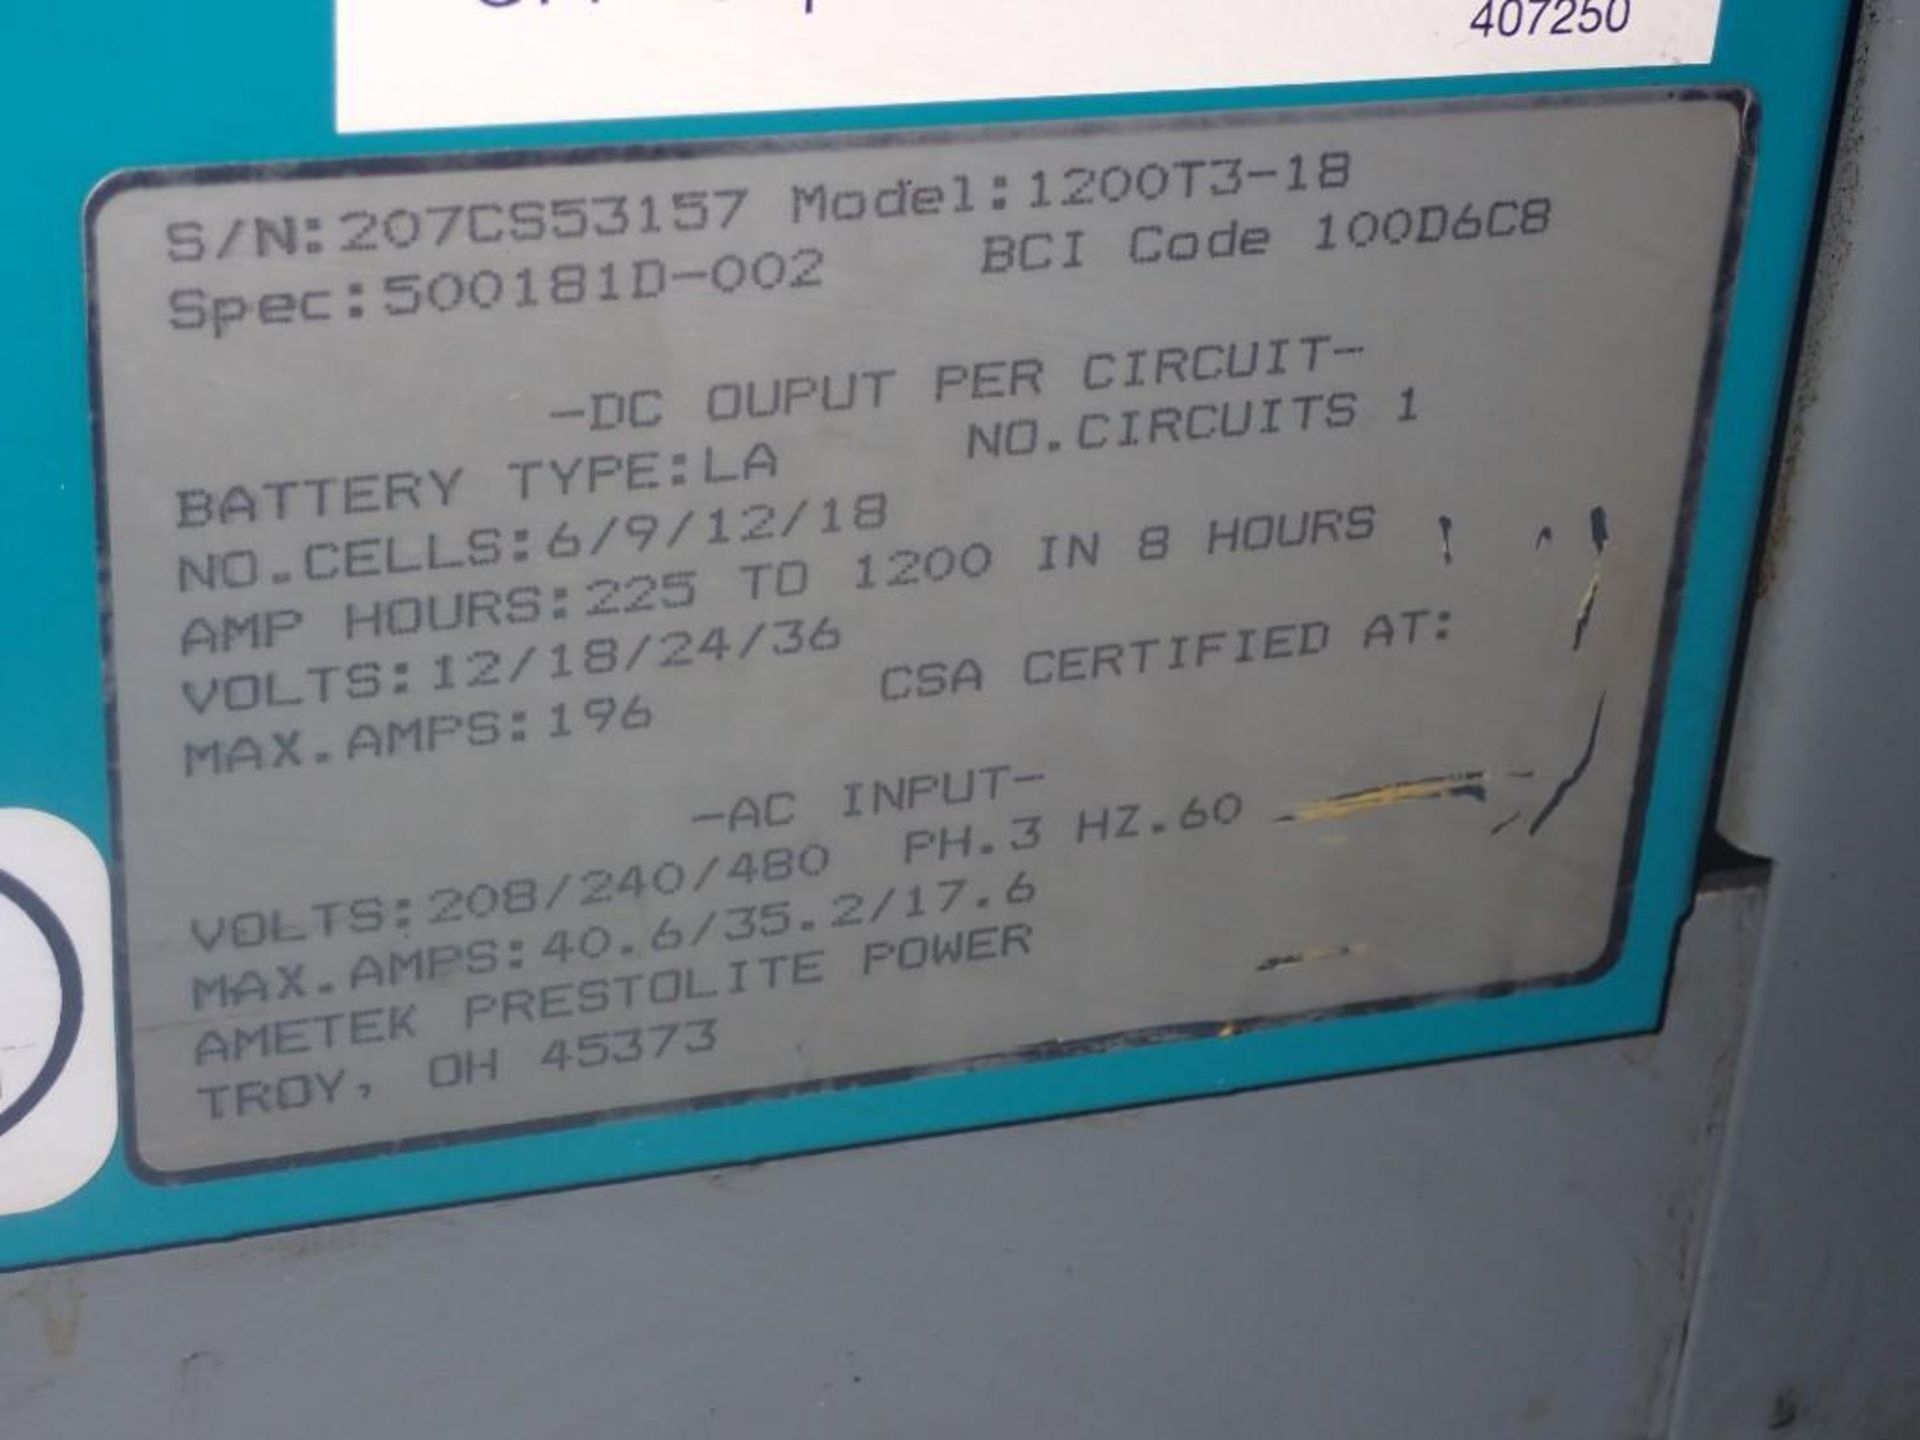 12/18/24/36 Volt Ametek DC Multiple Voltage Battery Charger - Image 3 of 4